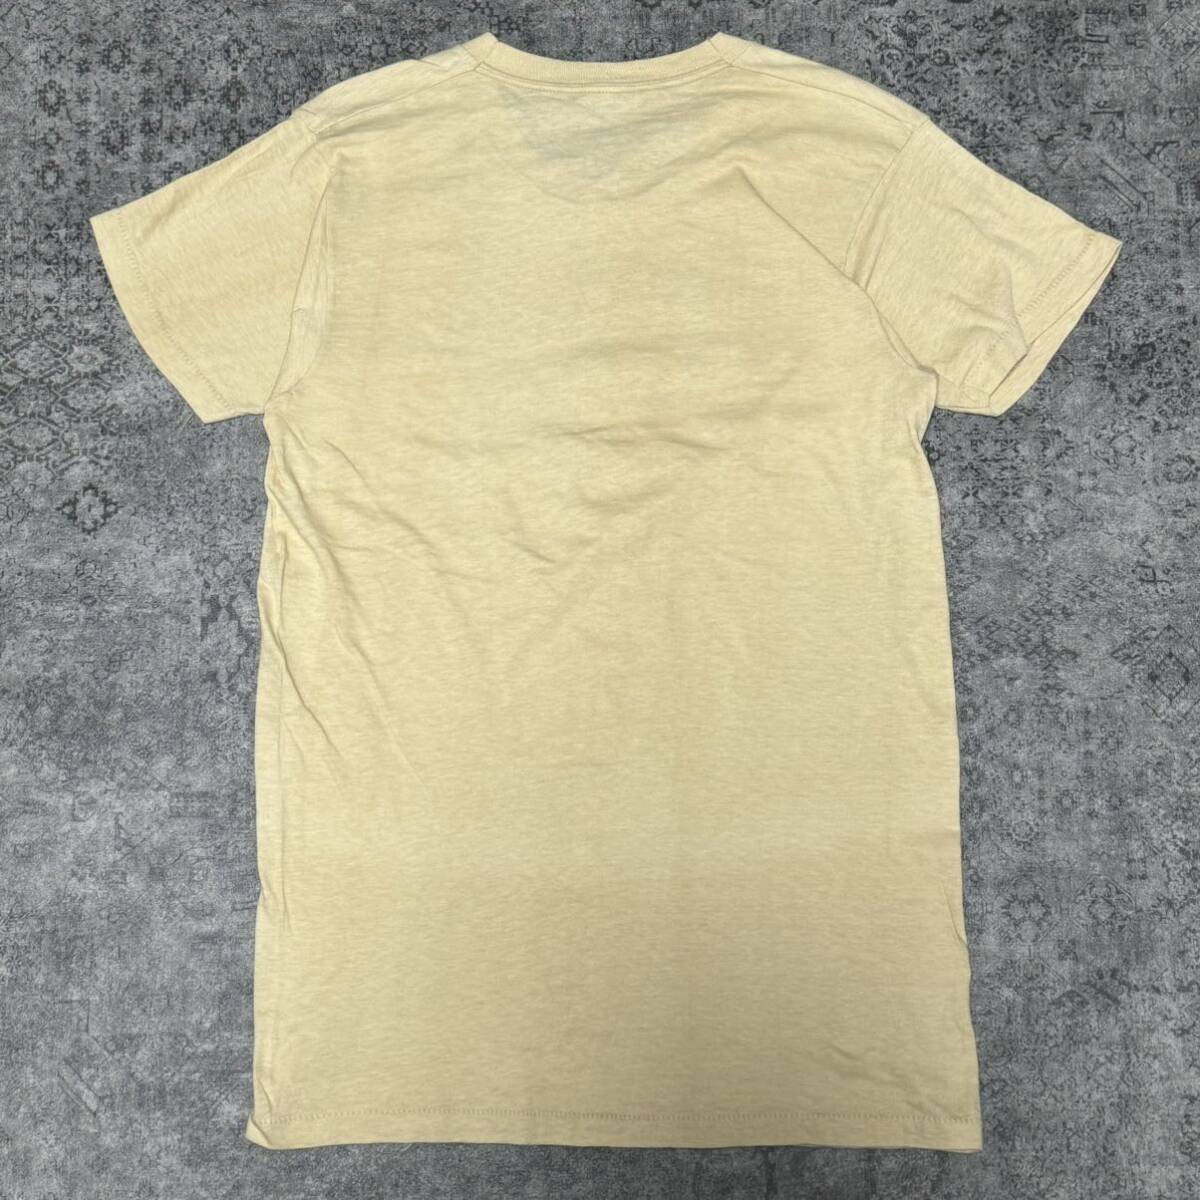 USA製 70s 80s Tシャツ 半袖 ベージュ 70年代 80年代 ヴィンテージ ビンテージ vintage_画像2